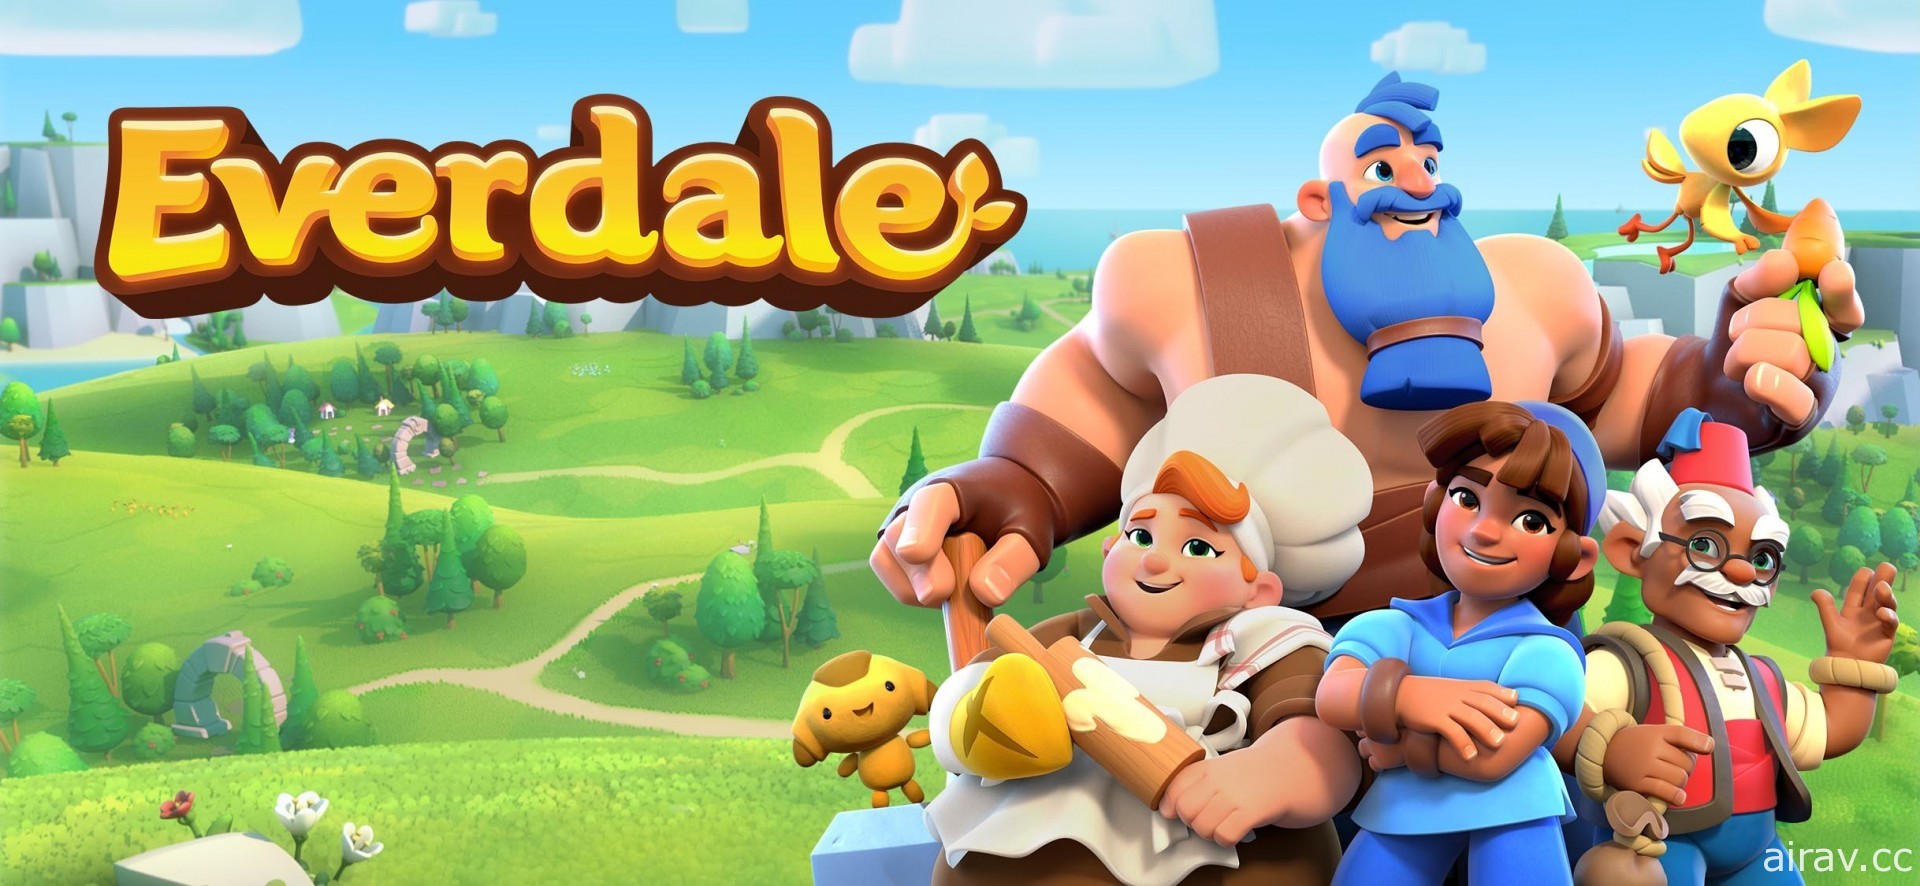 《部落衝突》開發商新作《Everdale》推出 強調合作與友誼的和平建築遊戲